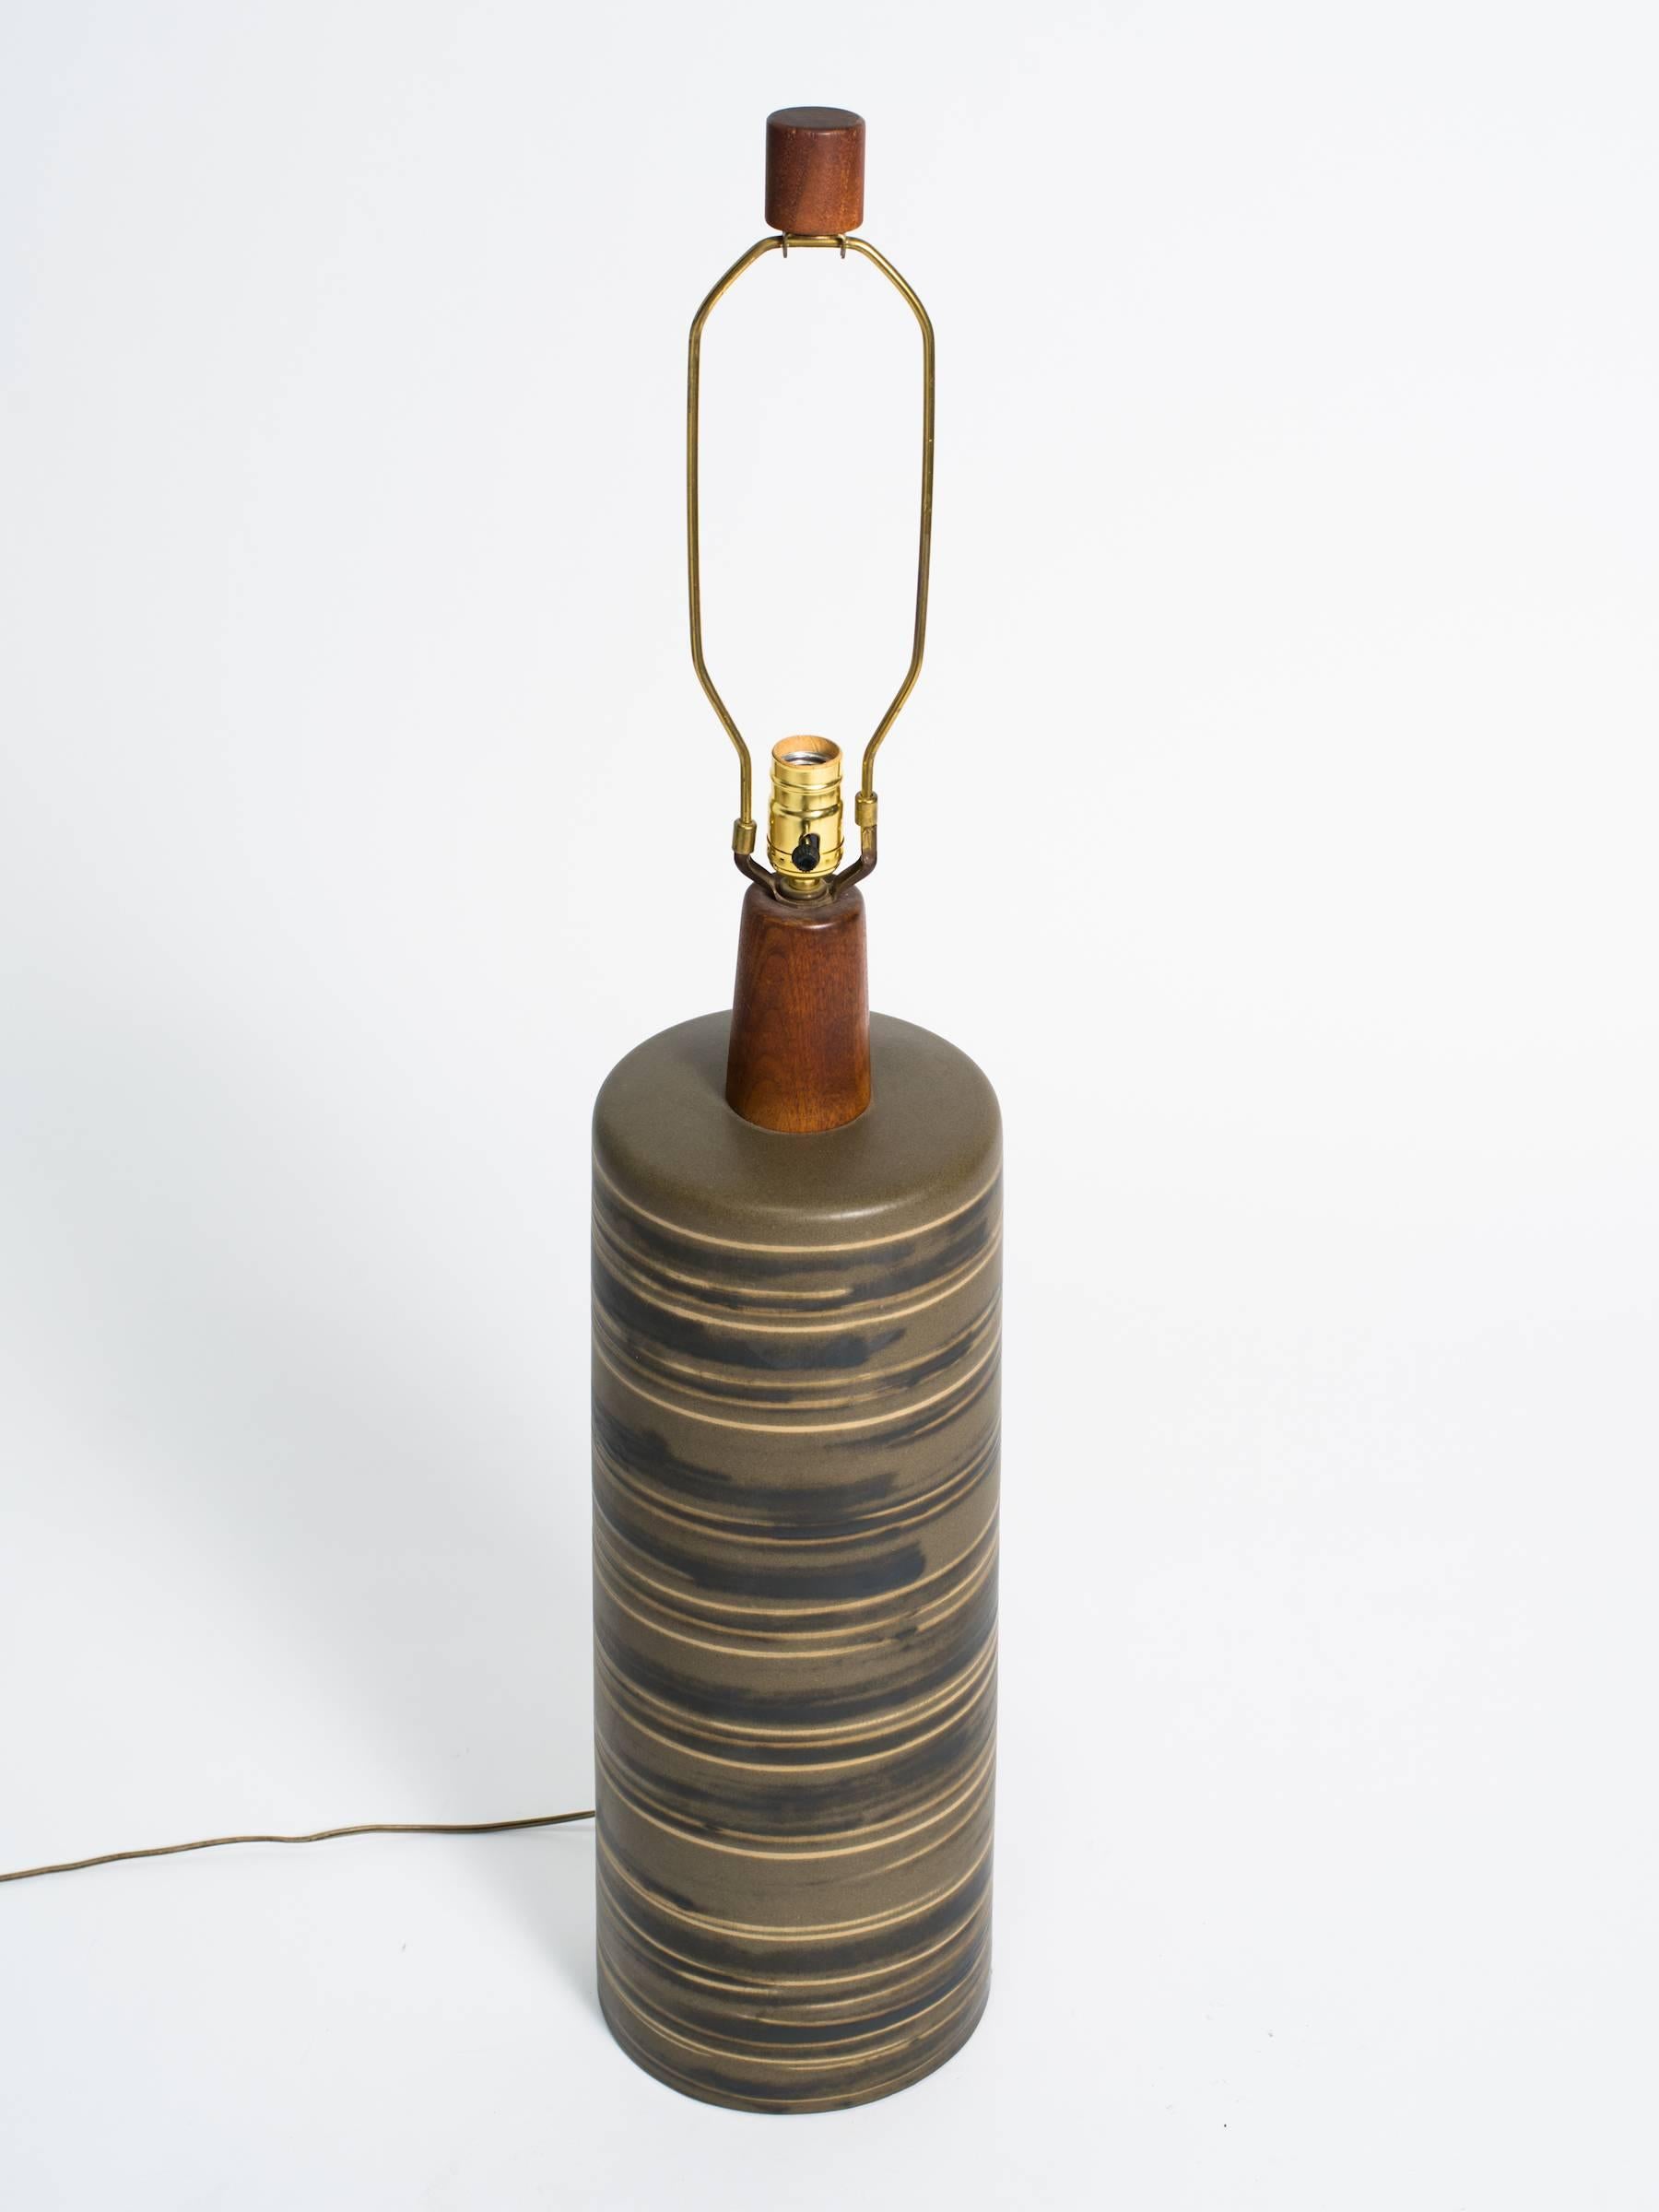 Hohe Martz-Keramiklampe mit Teakholzhals und -abschluss.

Die Höhe bezieht sich auf die Oberkante des Sockels.

